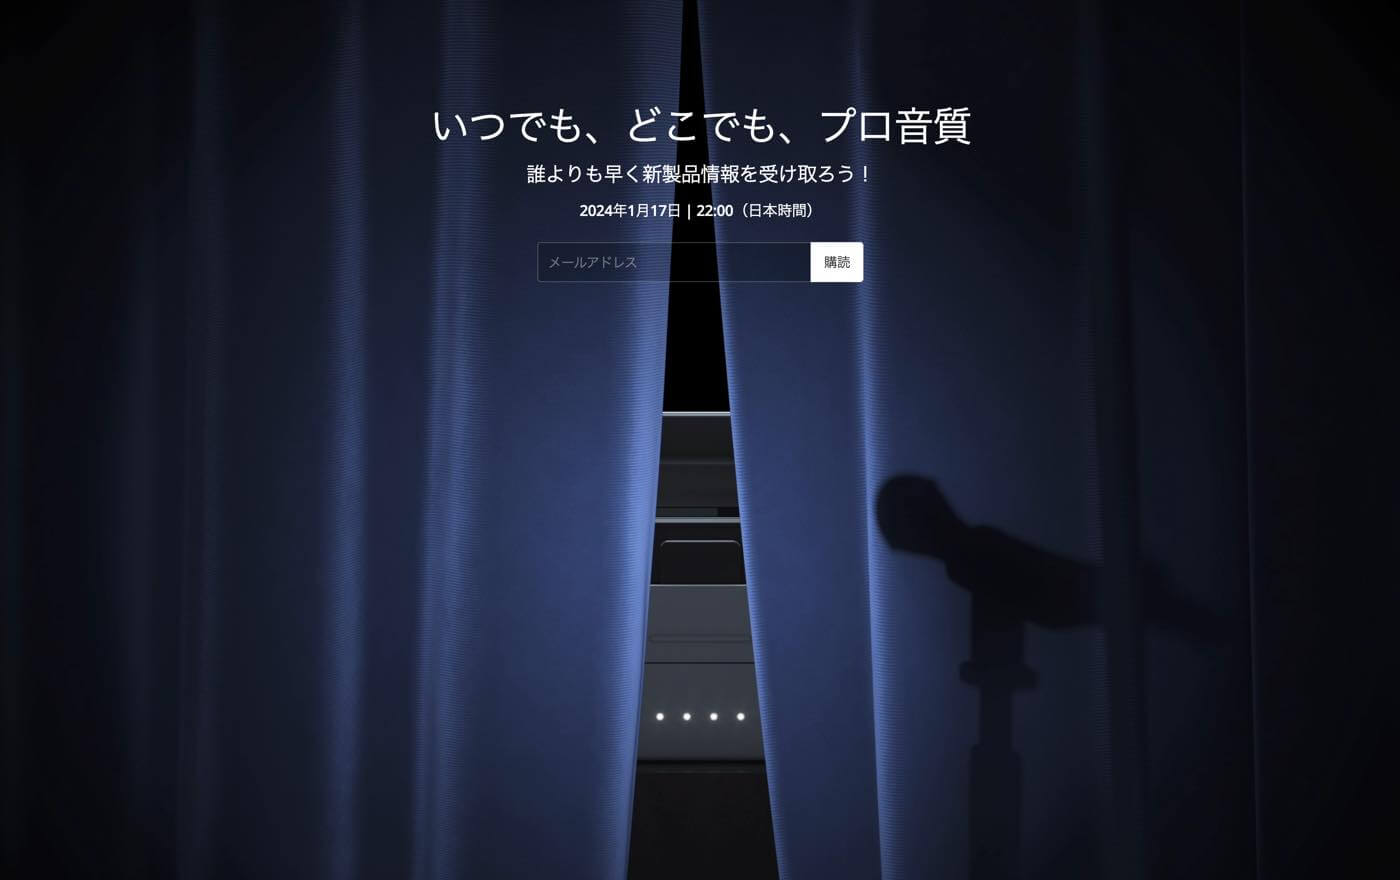 DJI、新型ワイヤレスマイク｢DJI Mic 2｣のティザーページを公開 ｰ 1月17日22時に発表へ